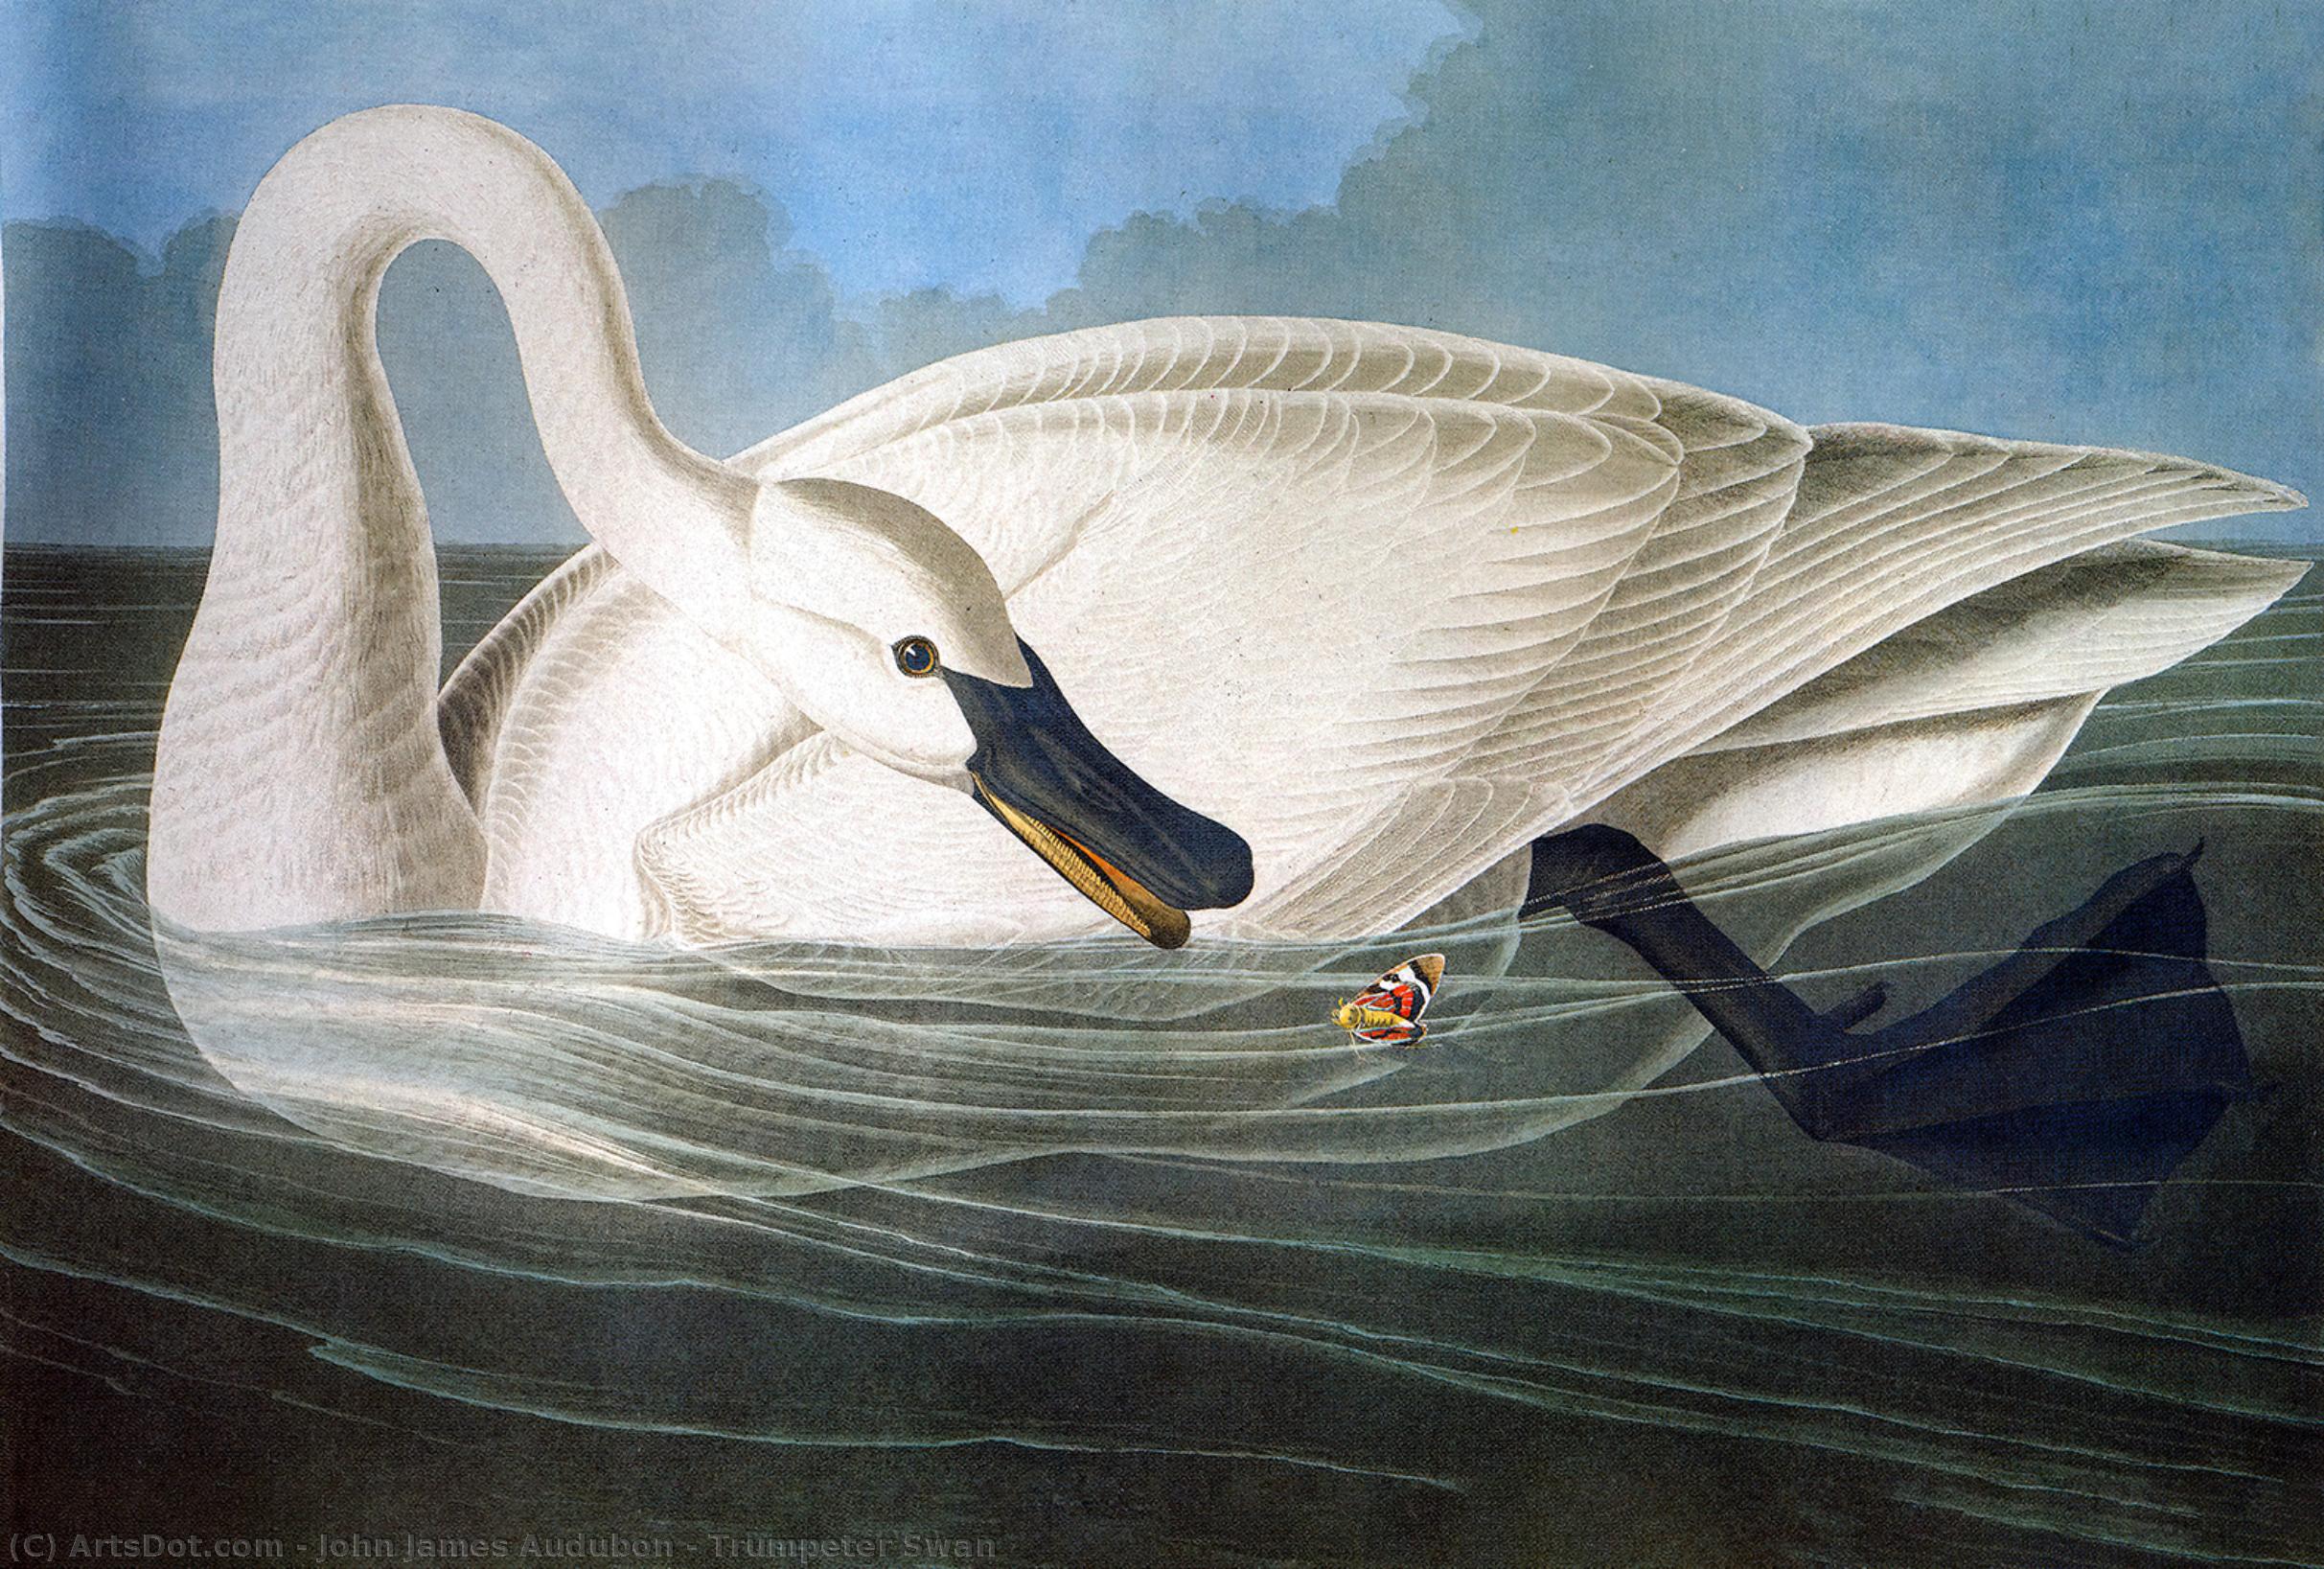 WikiOO.org - Enciklopedija dailės - Tapyba, meno kuriniai John James Audubon - Trumpeter Swan